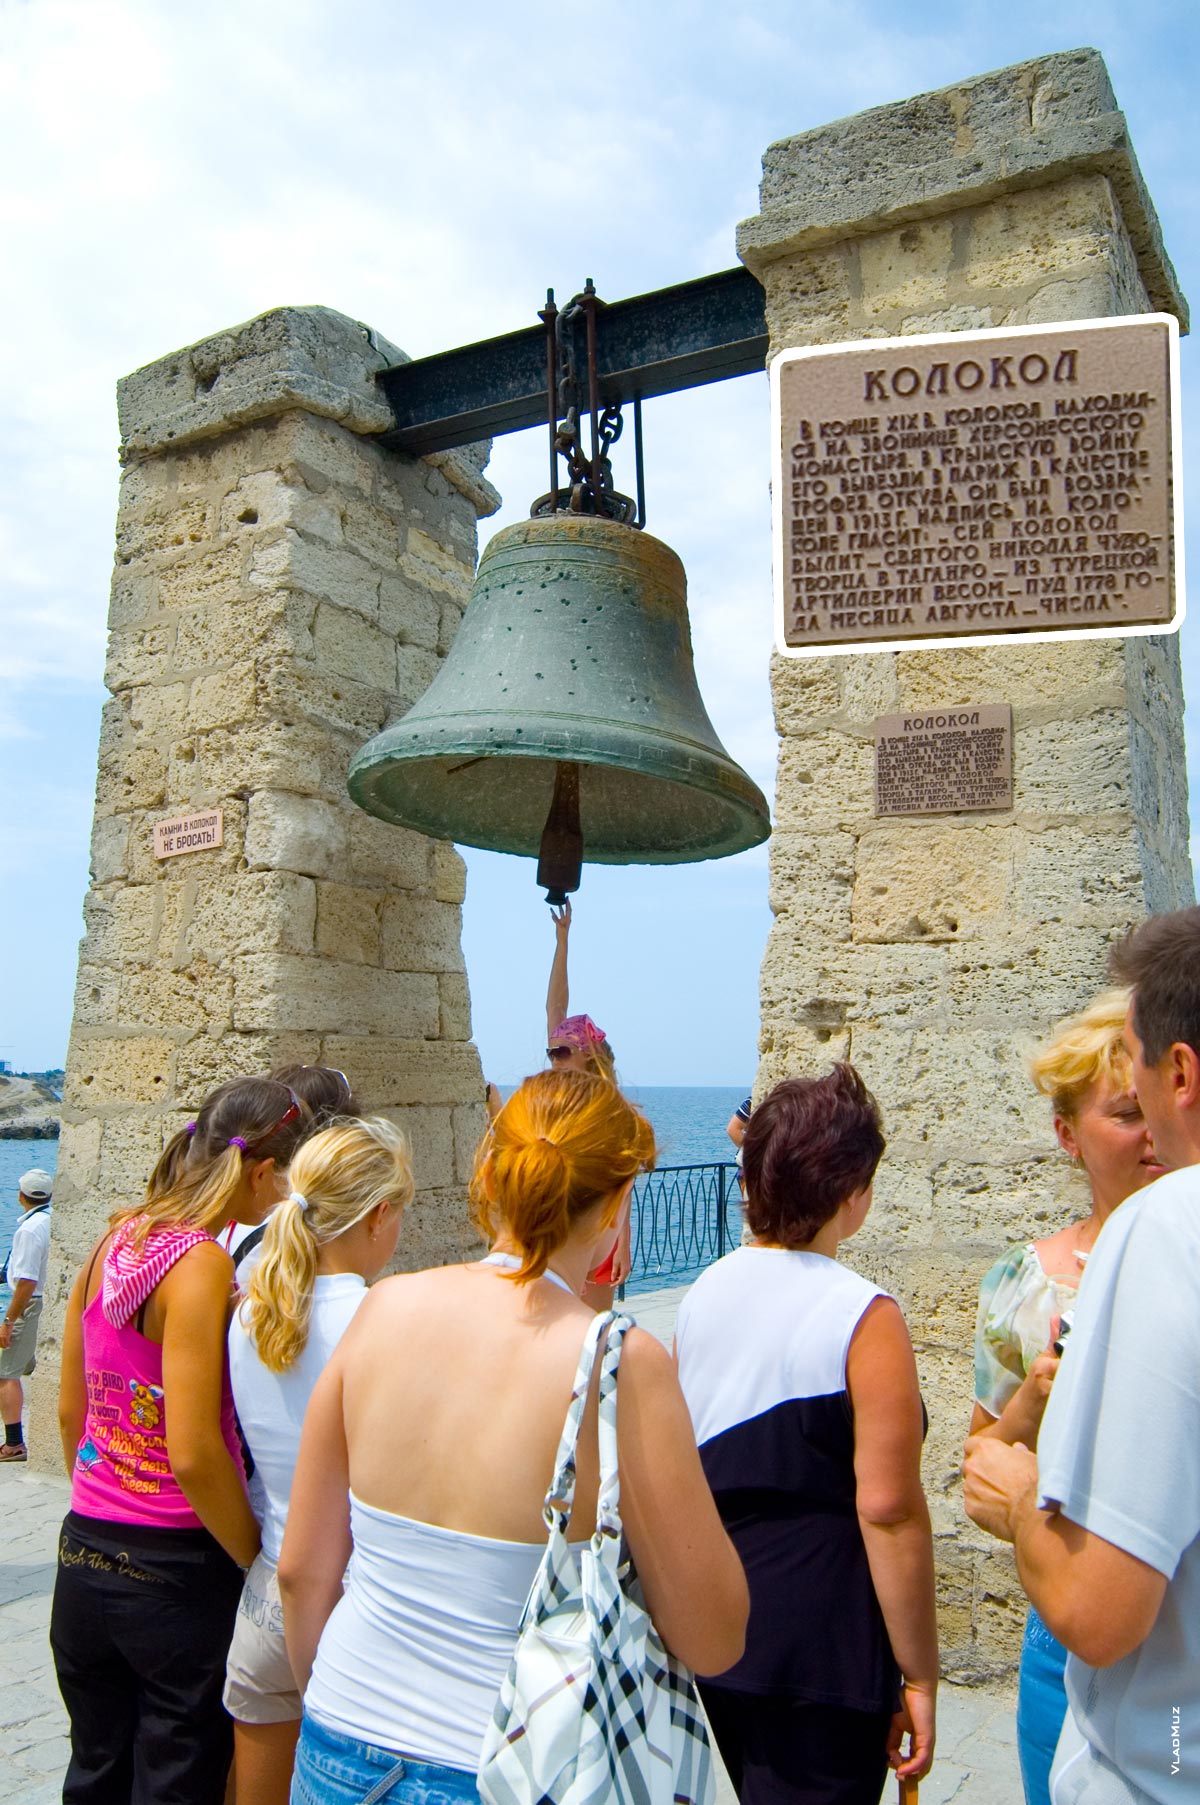 Фото Херсонеса Таврического: сигнальный колокол — одна из главных достопримечательностей современного Херсонеса